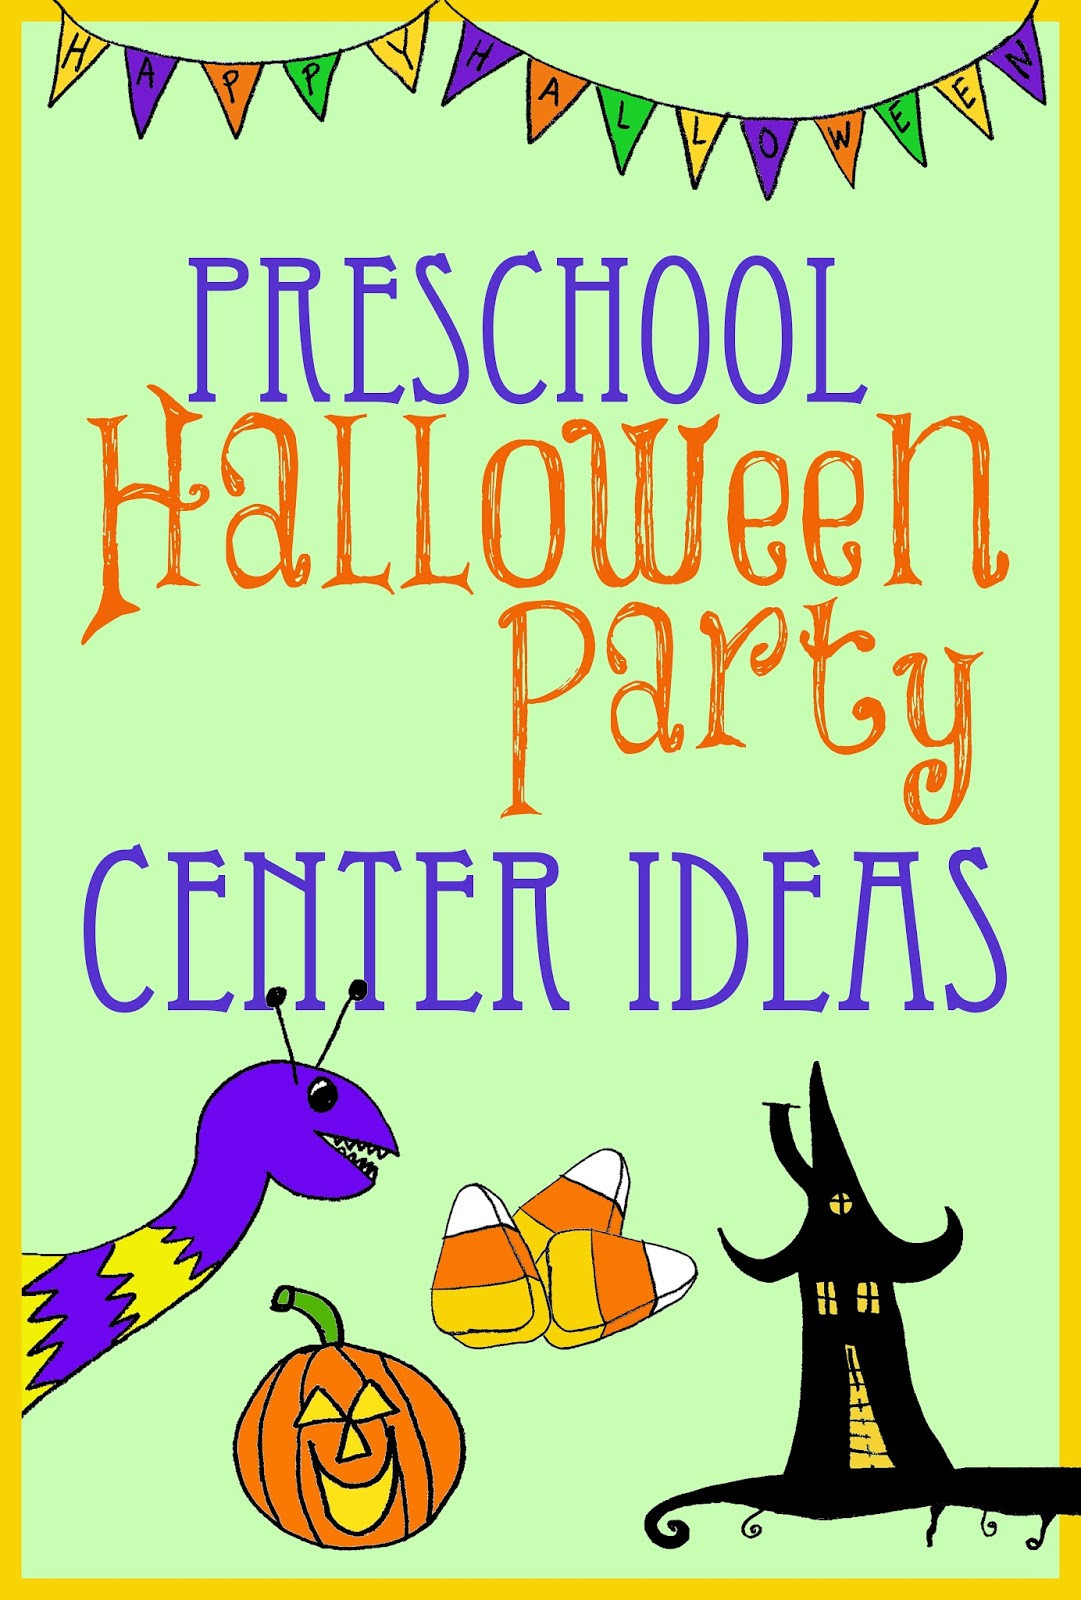 Halloween Party Ideas For Kindergarten Classes
 Halloween Party Center Ideas for Preschool Kindergarten